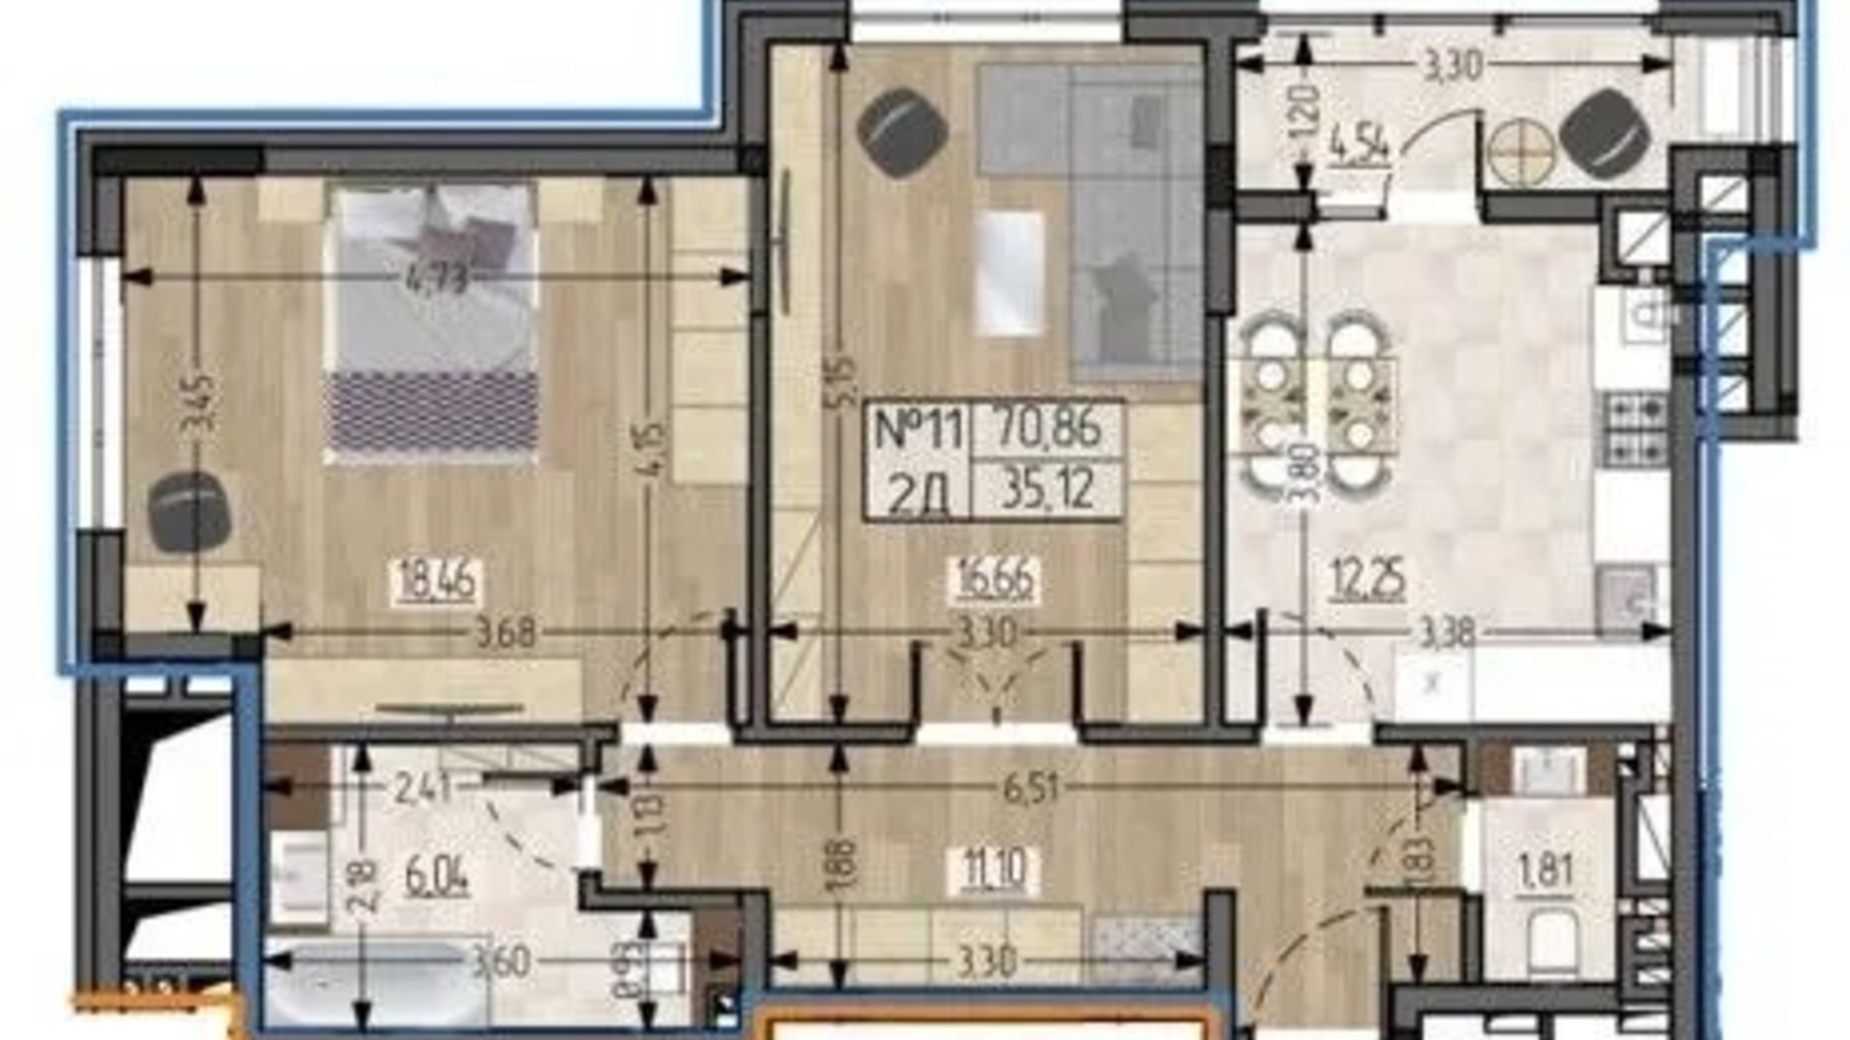 Планування 2-кімнатної квартири в ЖБК Полетаєва 70.86 м², фото 622459